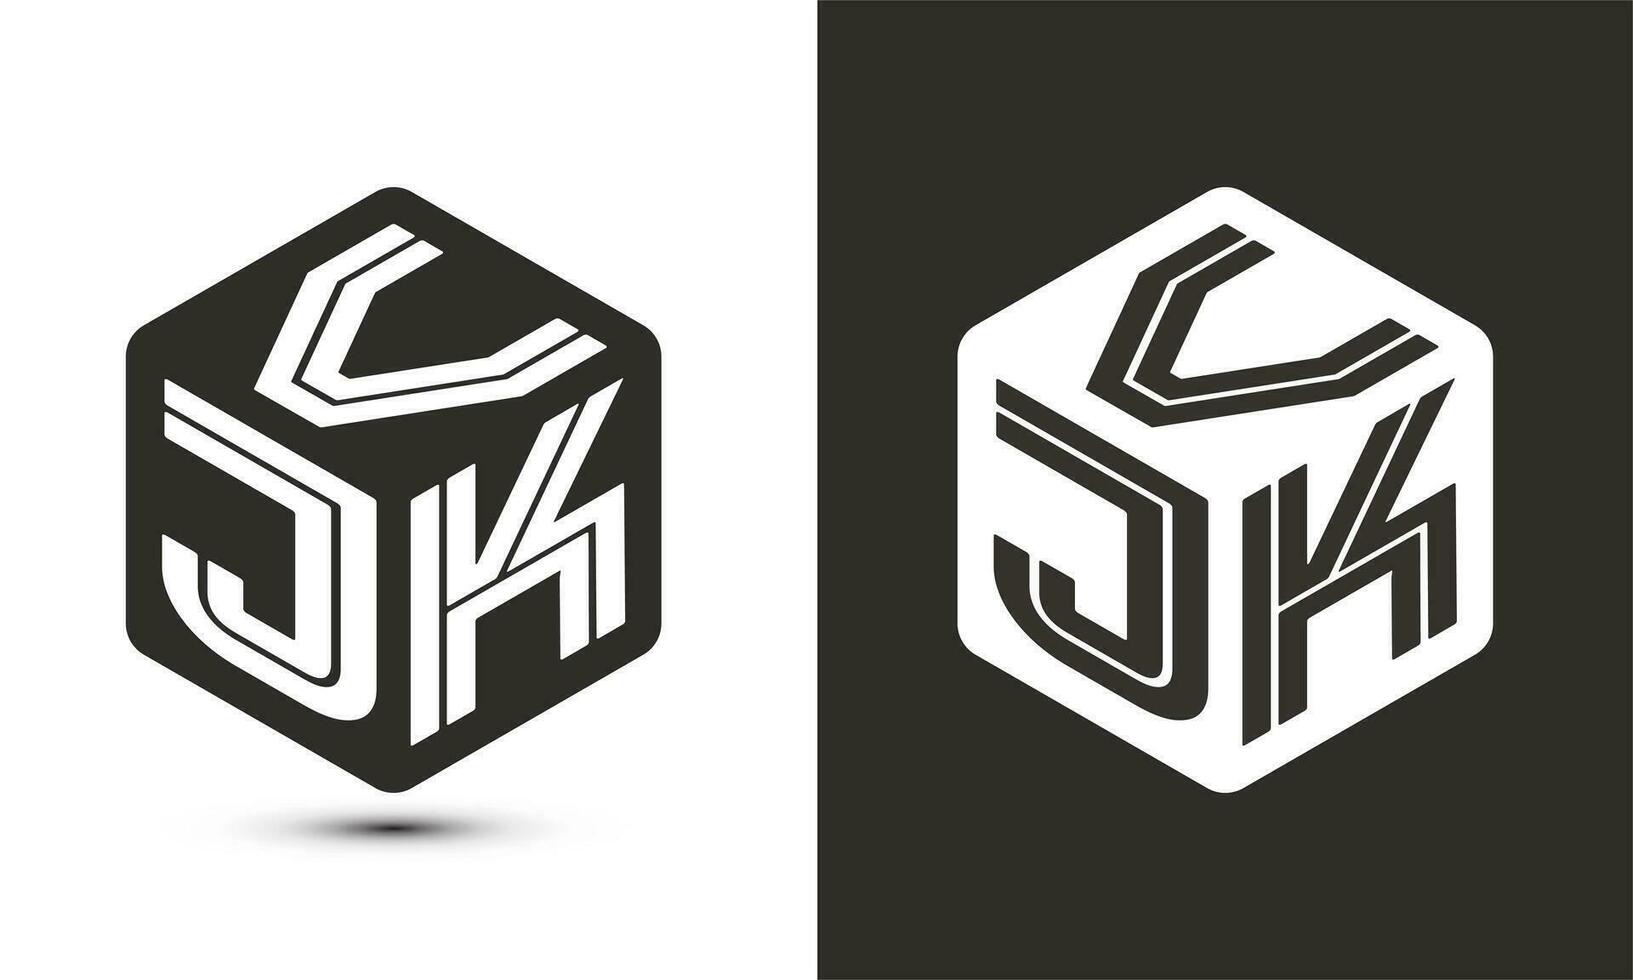 vjk brev logotyp design med illustratör kub logotyp, vektor logotyp modern alfabet font överlappning stil.